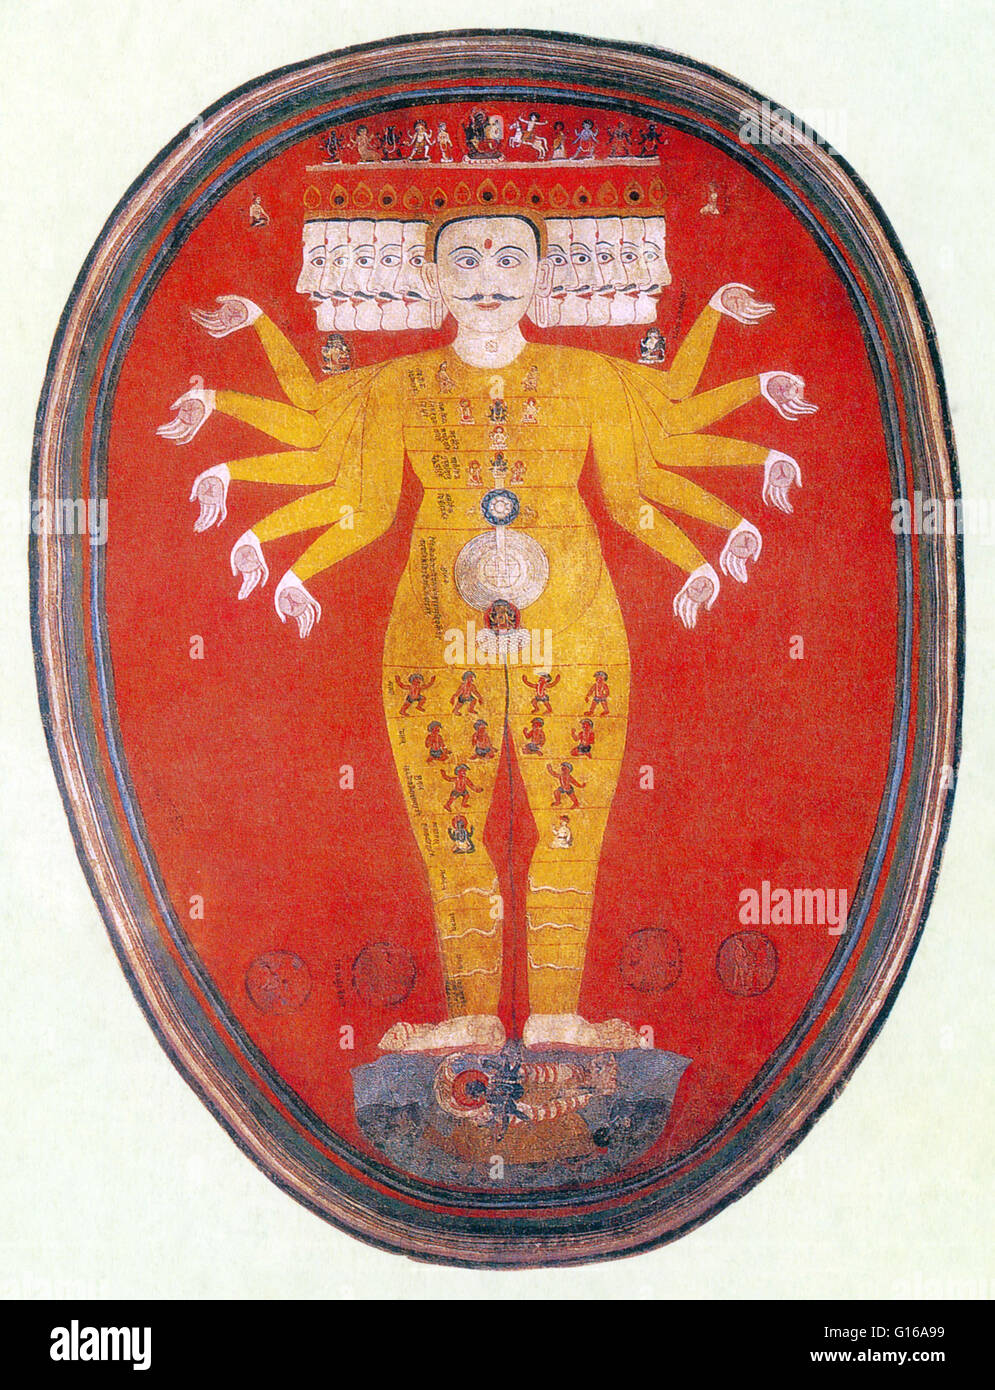 Purusha, il 1000 con testa di uomo cosmico, sorge su Vishnu. L'uomo cosmico è anche un archetipo figura che appare in i miti della creazione di una ampia varietà delle culture di tutto il mondo e le parti del suo corpo divenne parti fisiche dell'universo. L'universo è Foto Stock